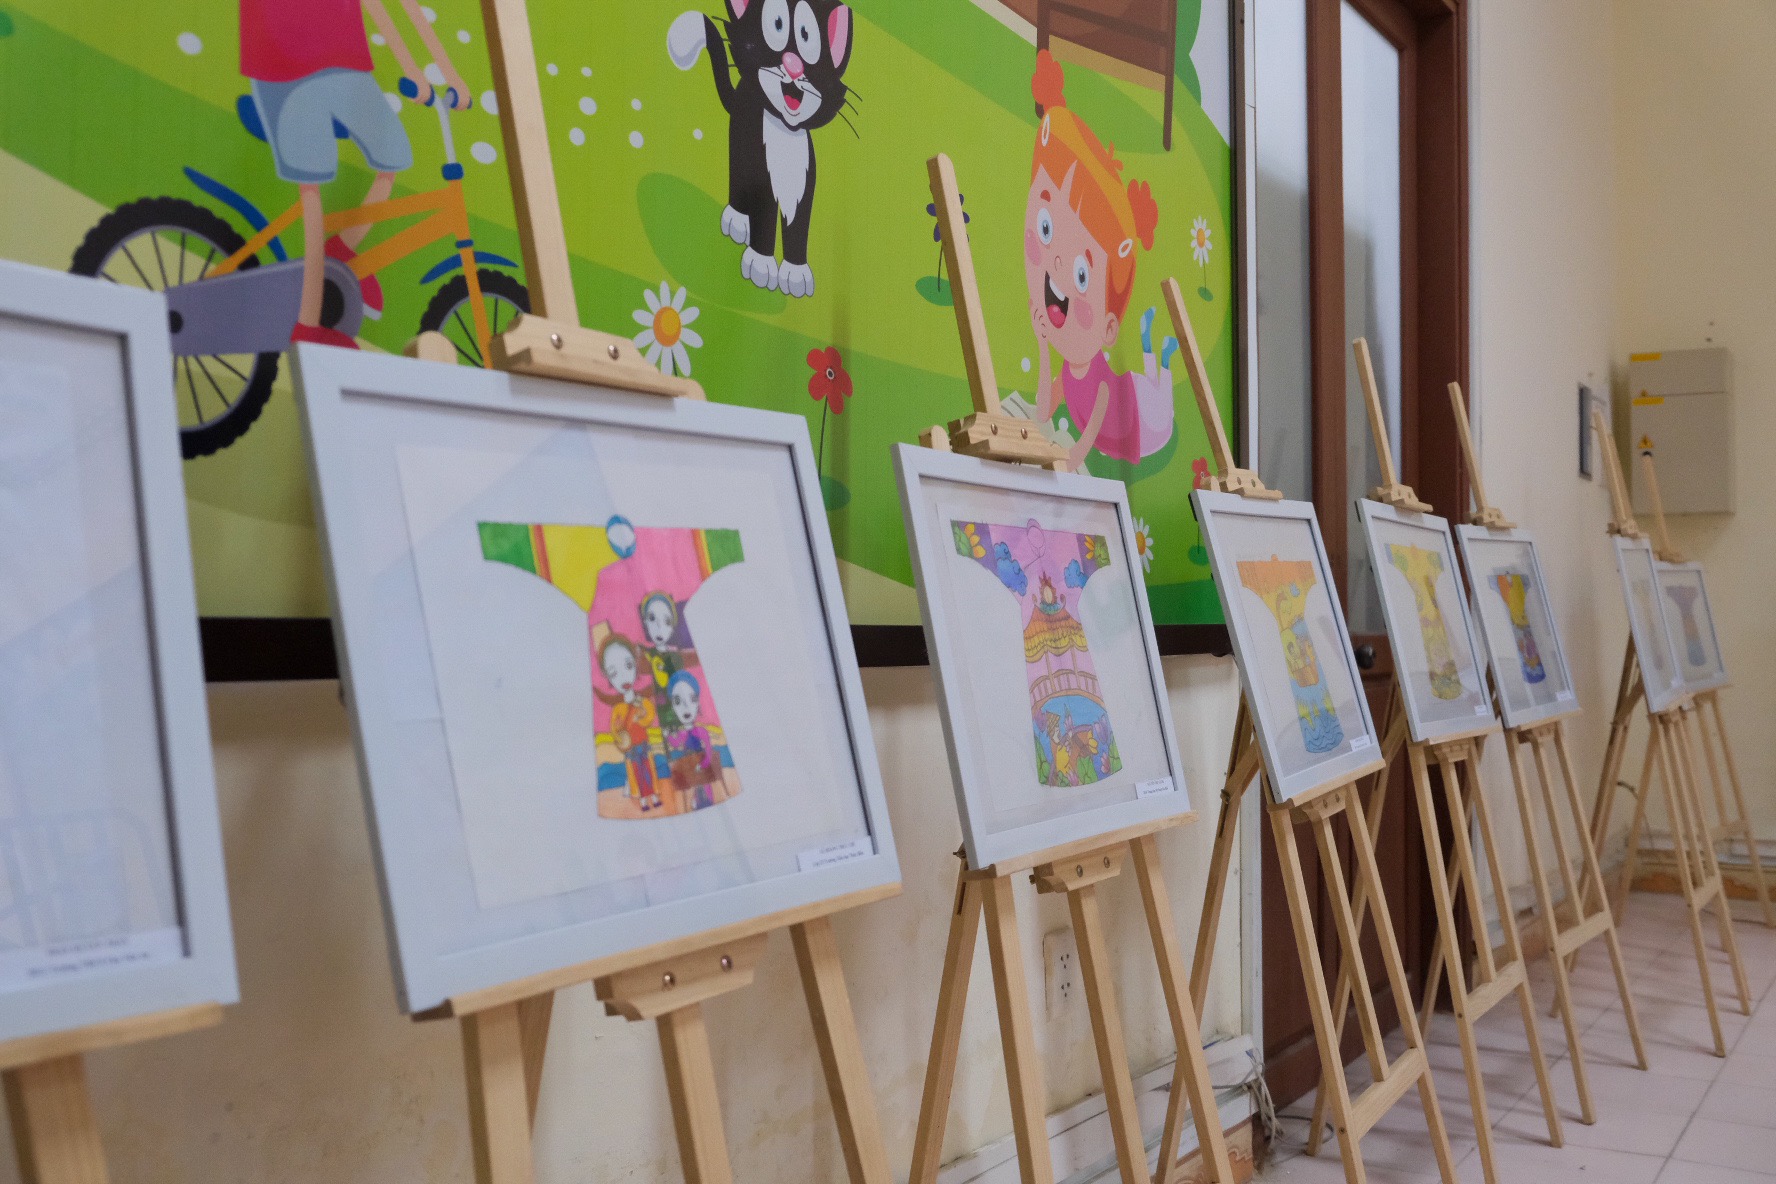 Theo đó, Hội thi thiếu nhi vẽ tranh theo sách năm nay mang chủ đề “Áo dài và Di sản“, là hoạt động nằm trong kế hoạch của UBND tỉnh Thừa Thiên Huế tham gia lễ hội Festival Huế Bốn mùa năm 2023.